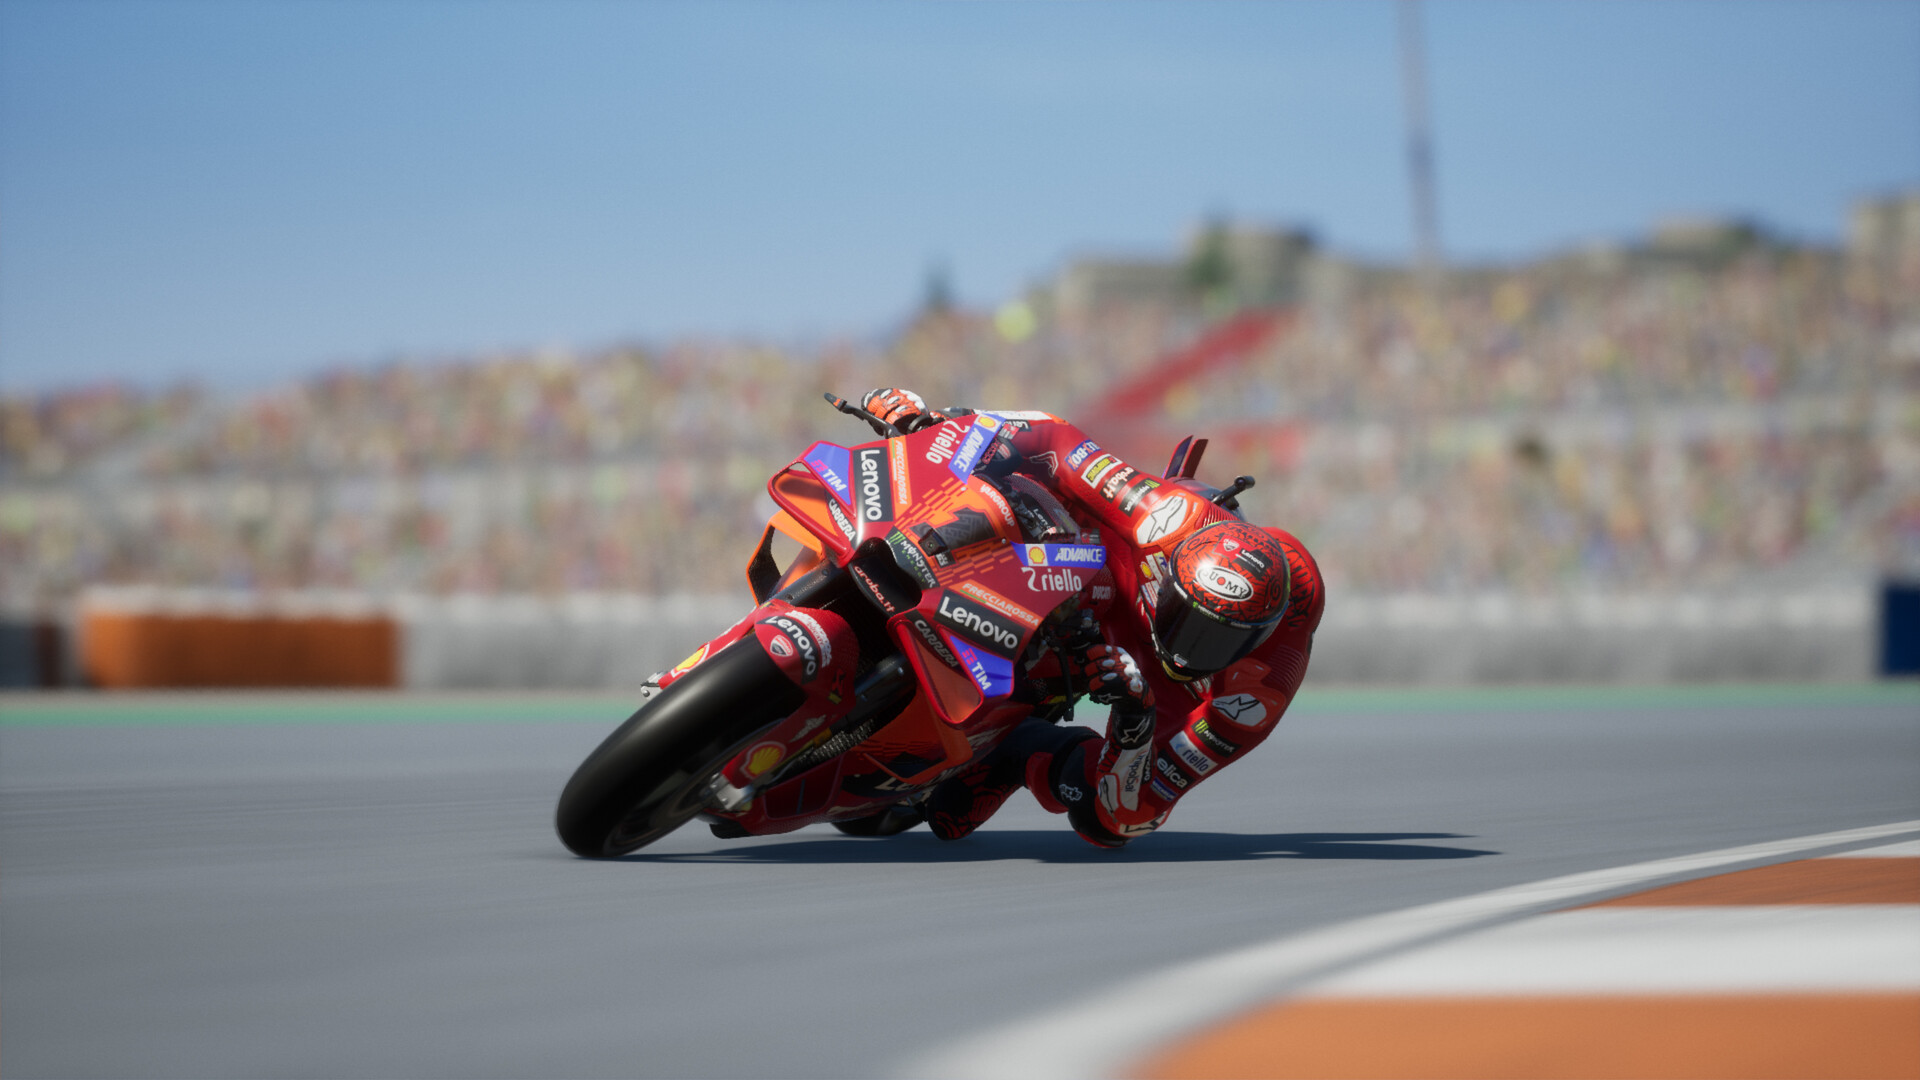 MotoGP 24 anunciado, revelado trailer e data de lançamento